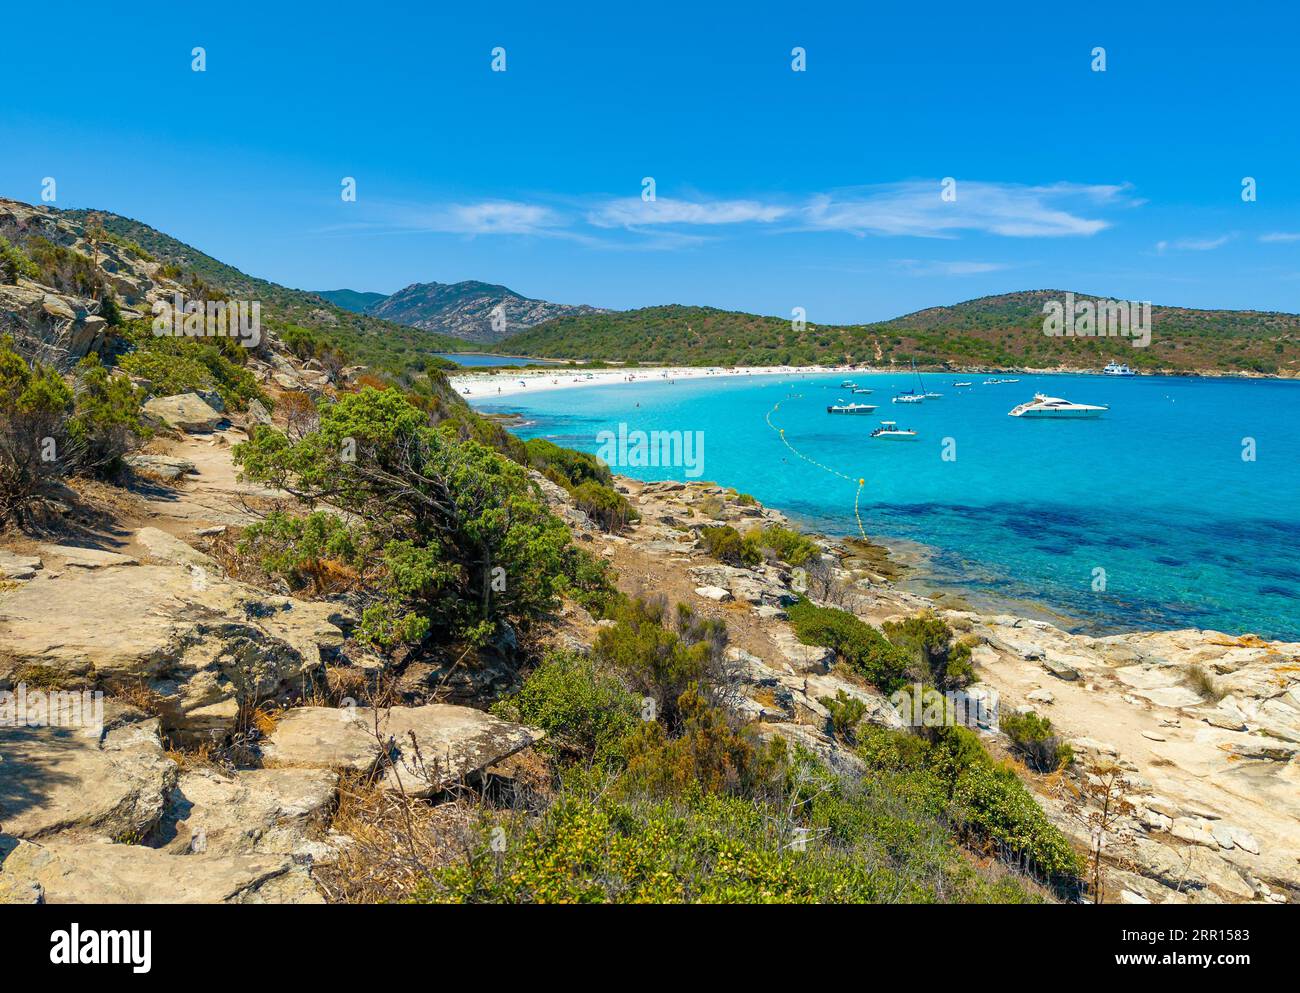 Corsica (Francia) - la Corsica è un'isola turistica francese nel Mar Mediterraneo, con bellissime spiagge. Qui Sentier du littoral Saint-Florent, Plage de Lotu Foto Stock